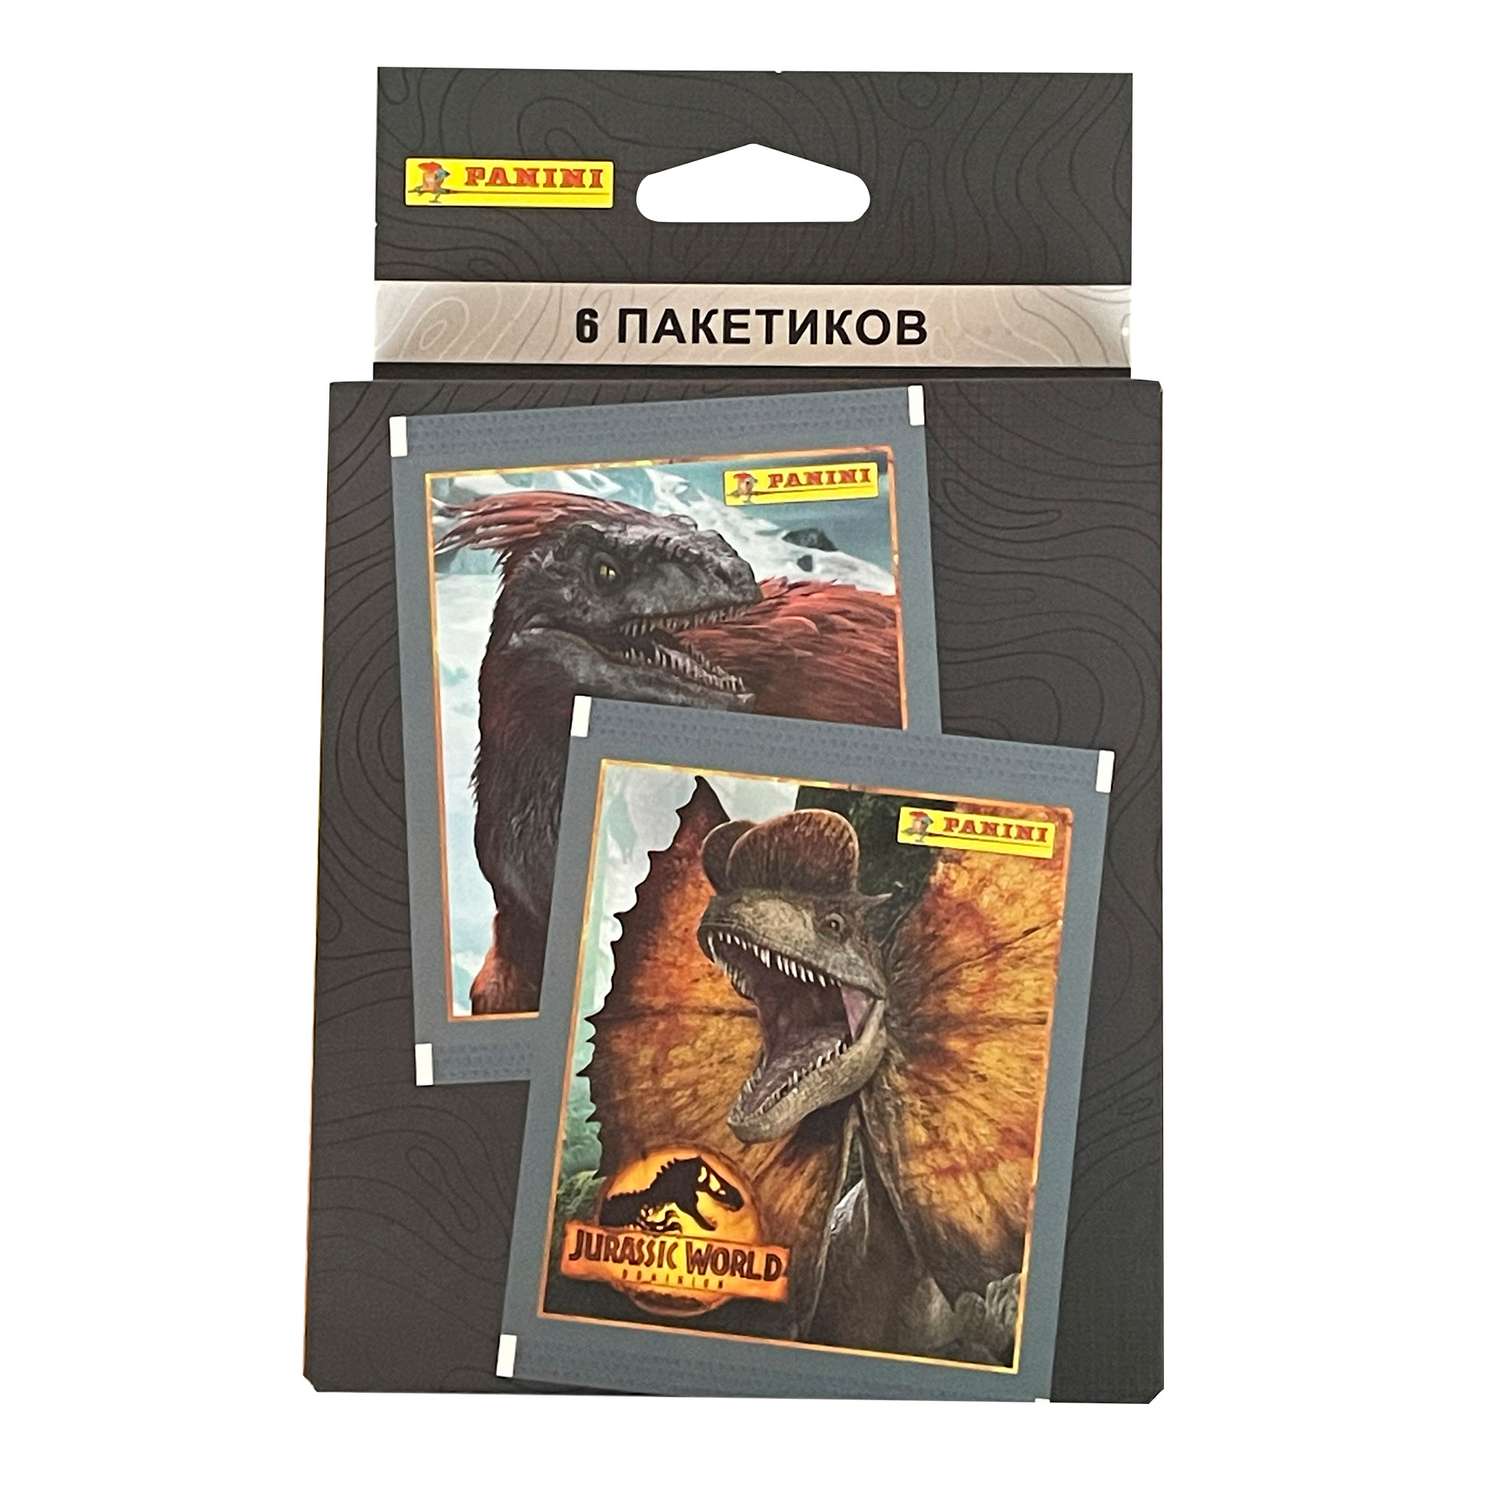 Набор коллекционных наклеек Panini Мир Юрского периода Jurassic World Movie 24 пакетика - фото 2